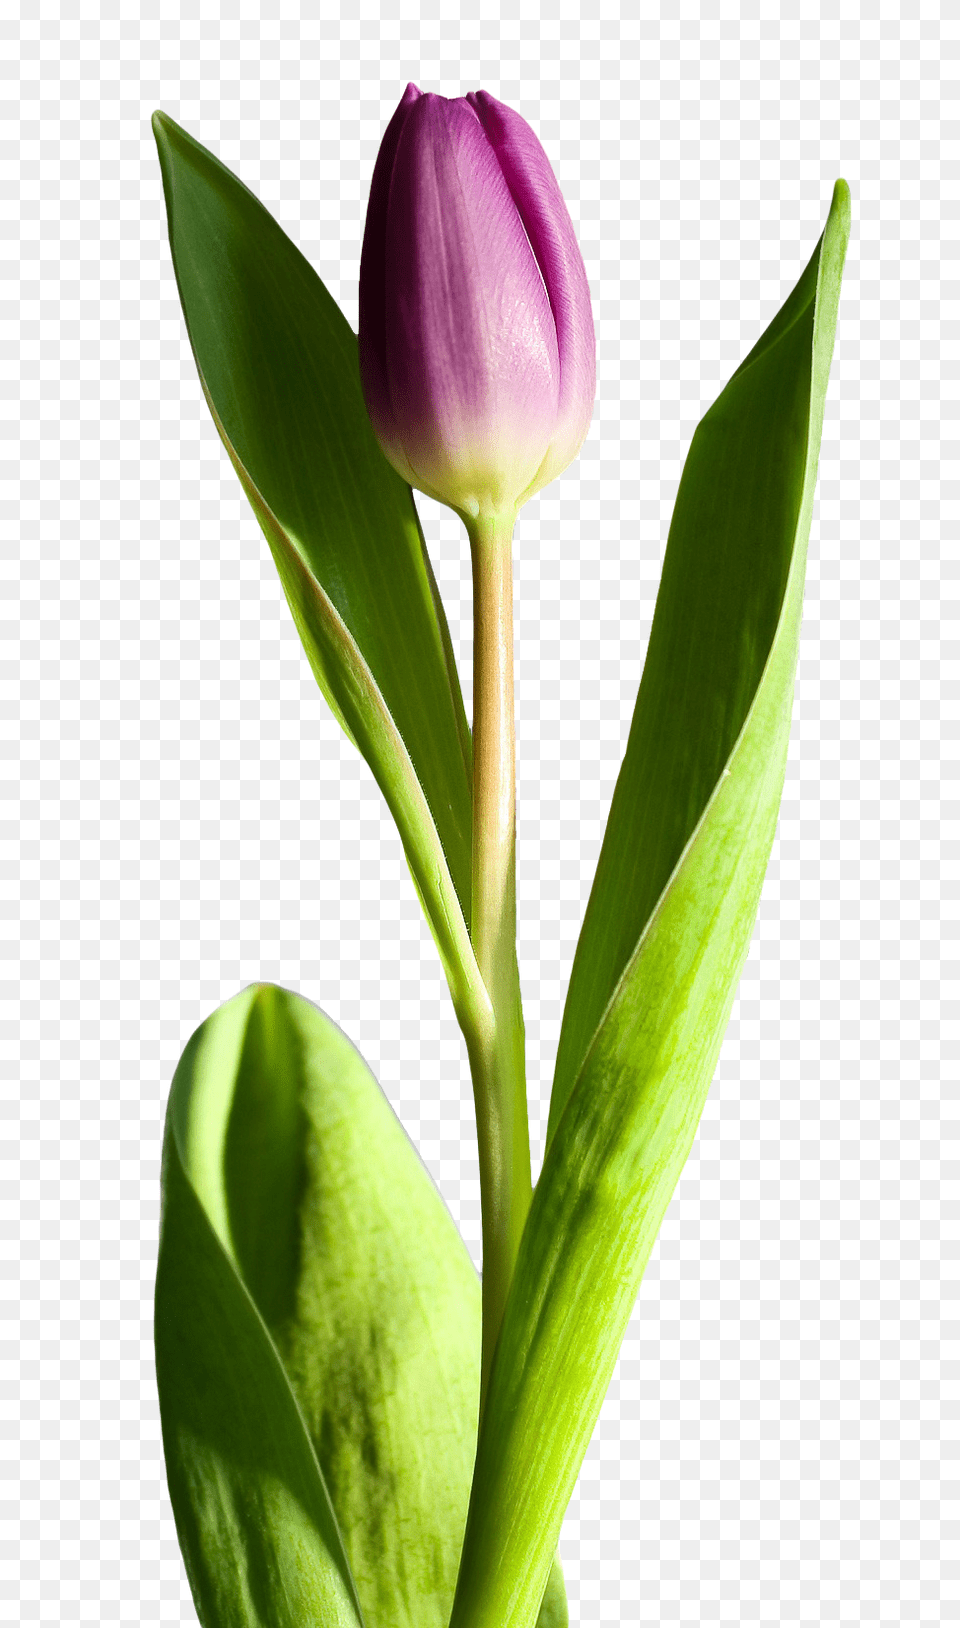 Pngpix Com Tulip Flower Transparent, Plant, Bud, Sprout, Petal Png Image